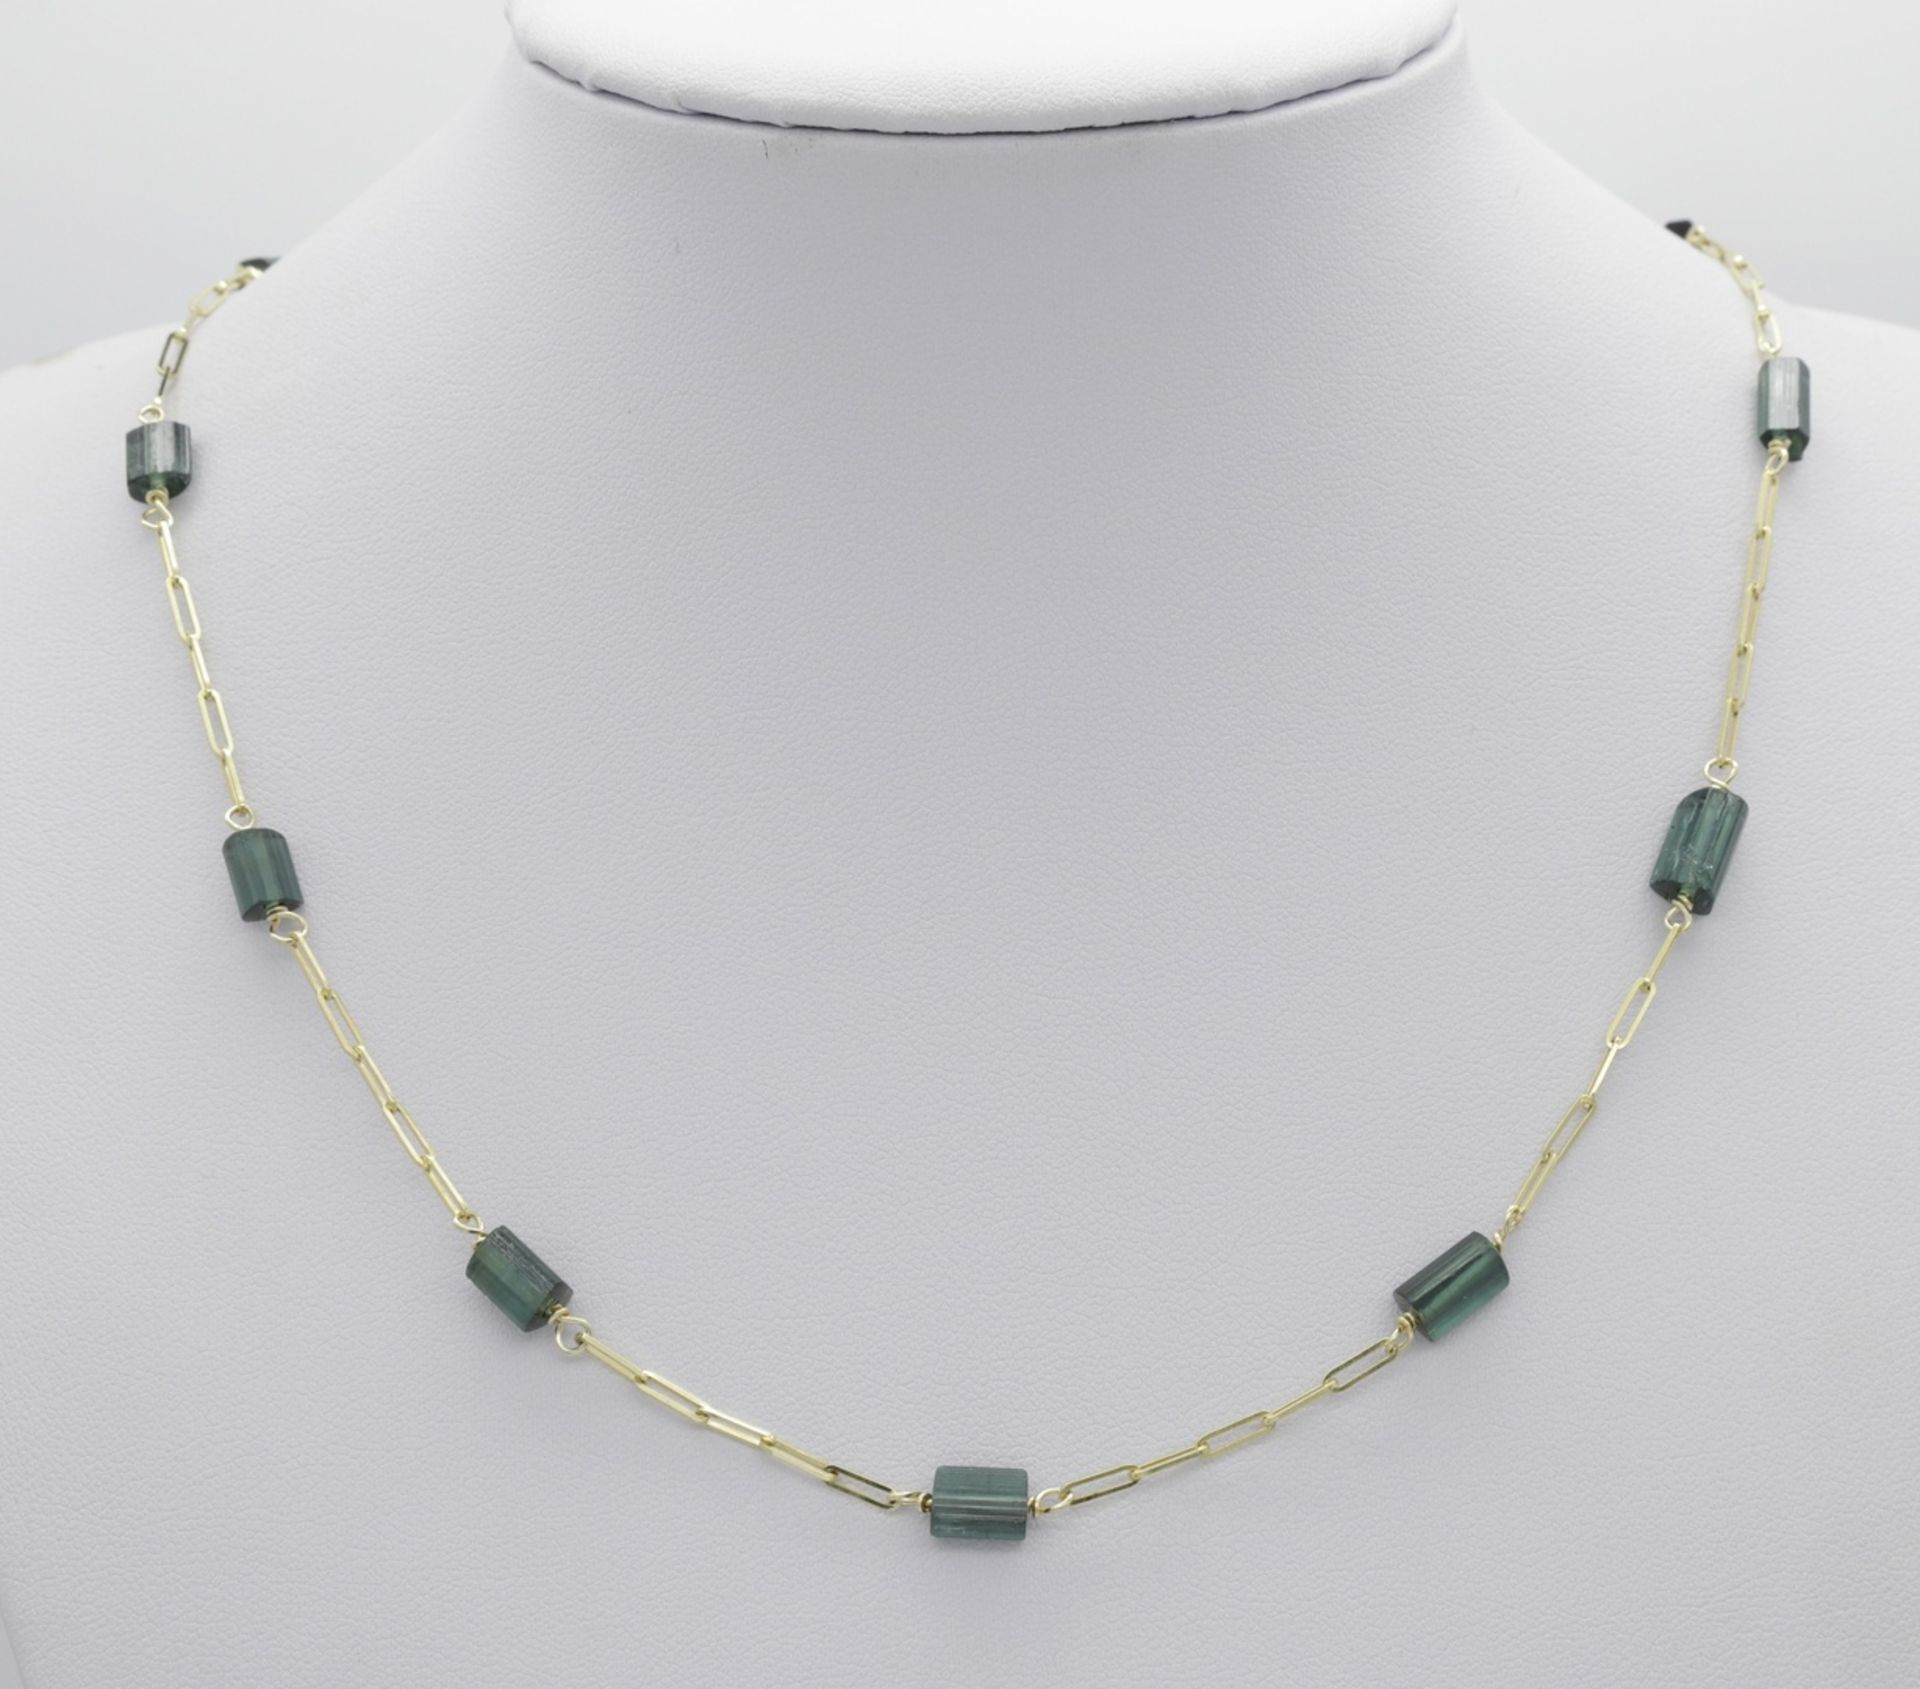 Halskette mit grünen Turmalin-Elementen